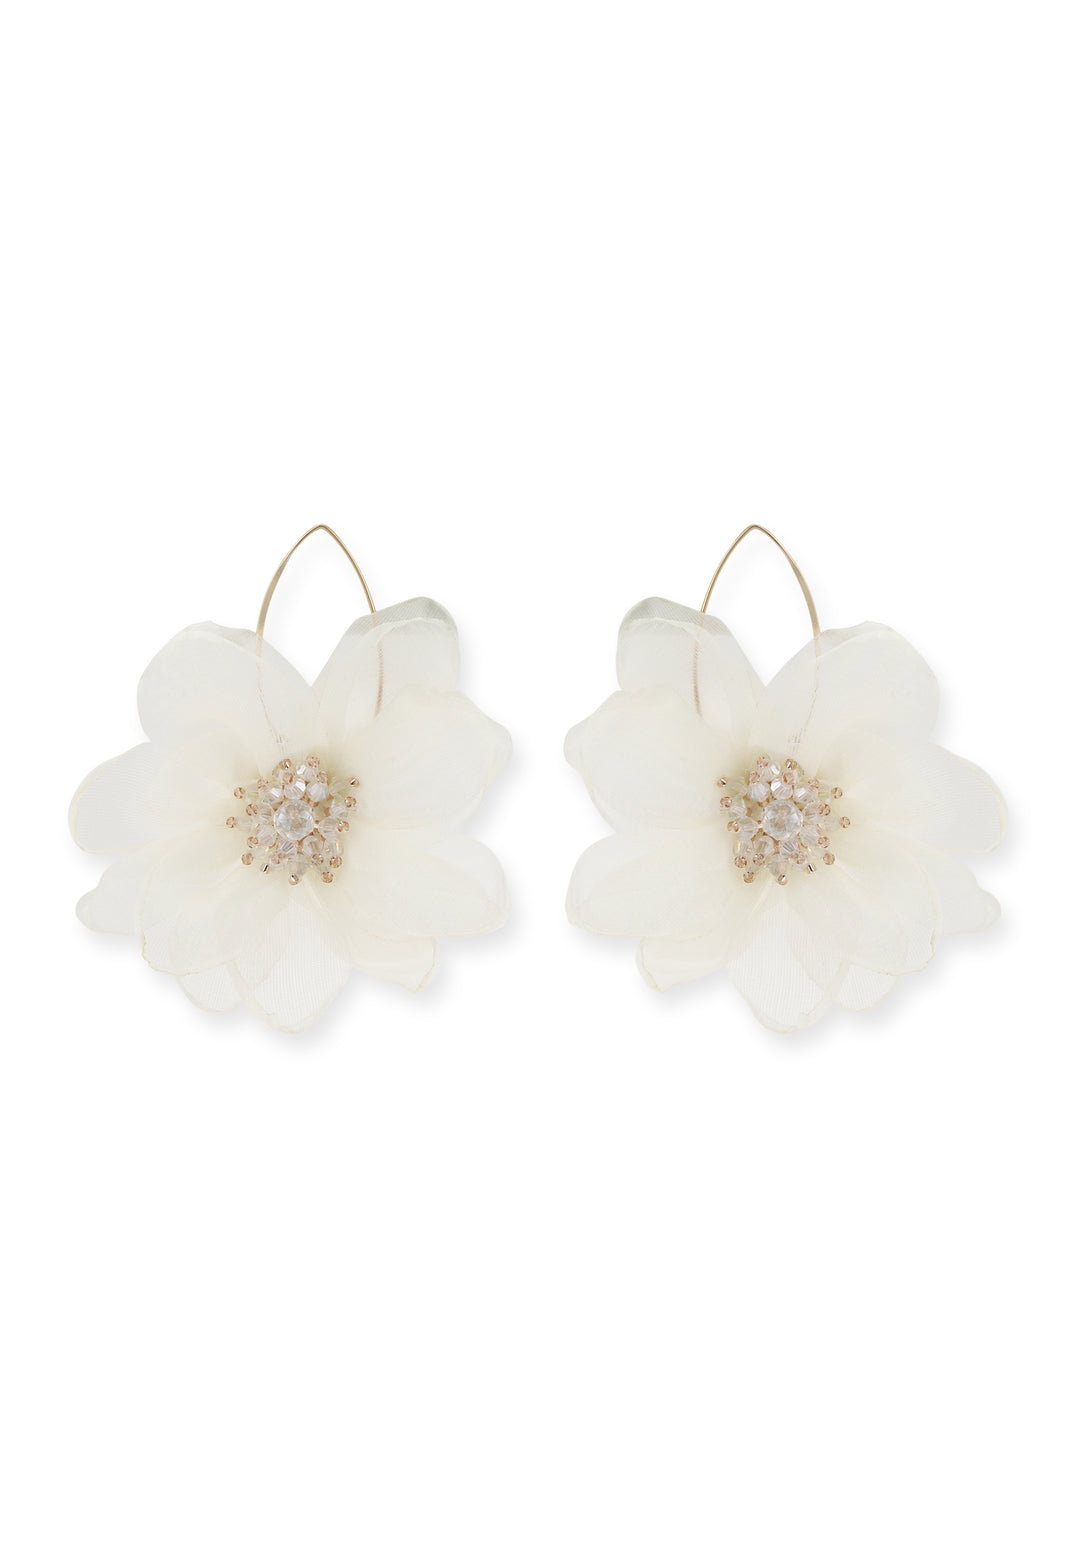 Lily Earrings in Ivory